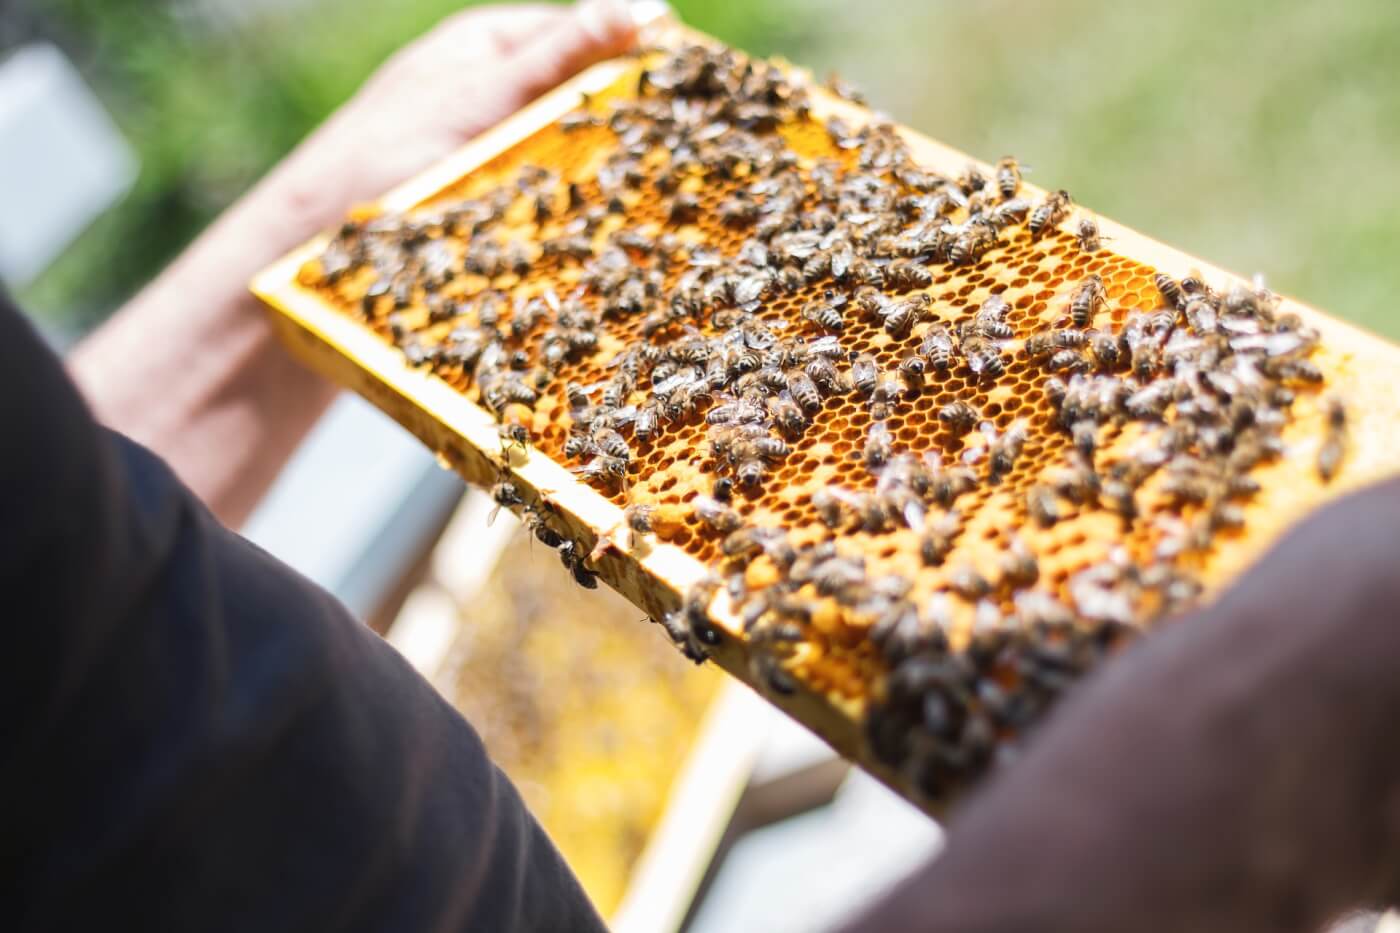 Beekeeping: अच्छी कमाई के लिए करें मधुमक्खी पालन, सरकार दे रही है 90% की बंपर सब्सिडी